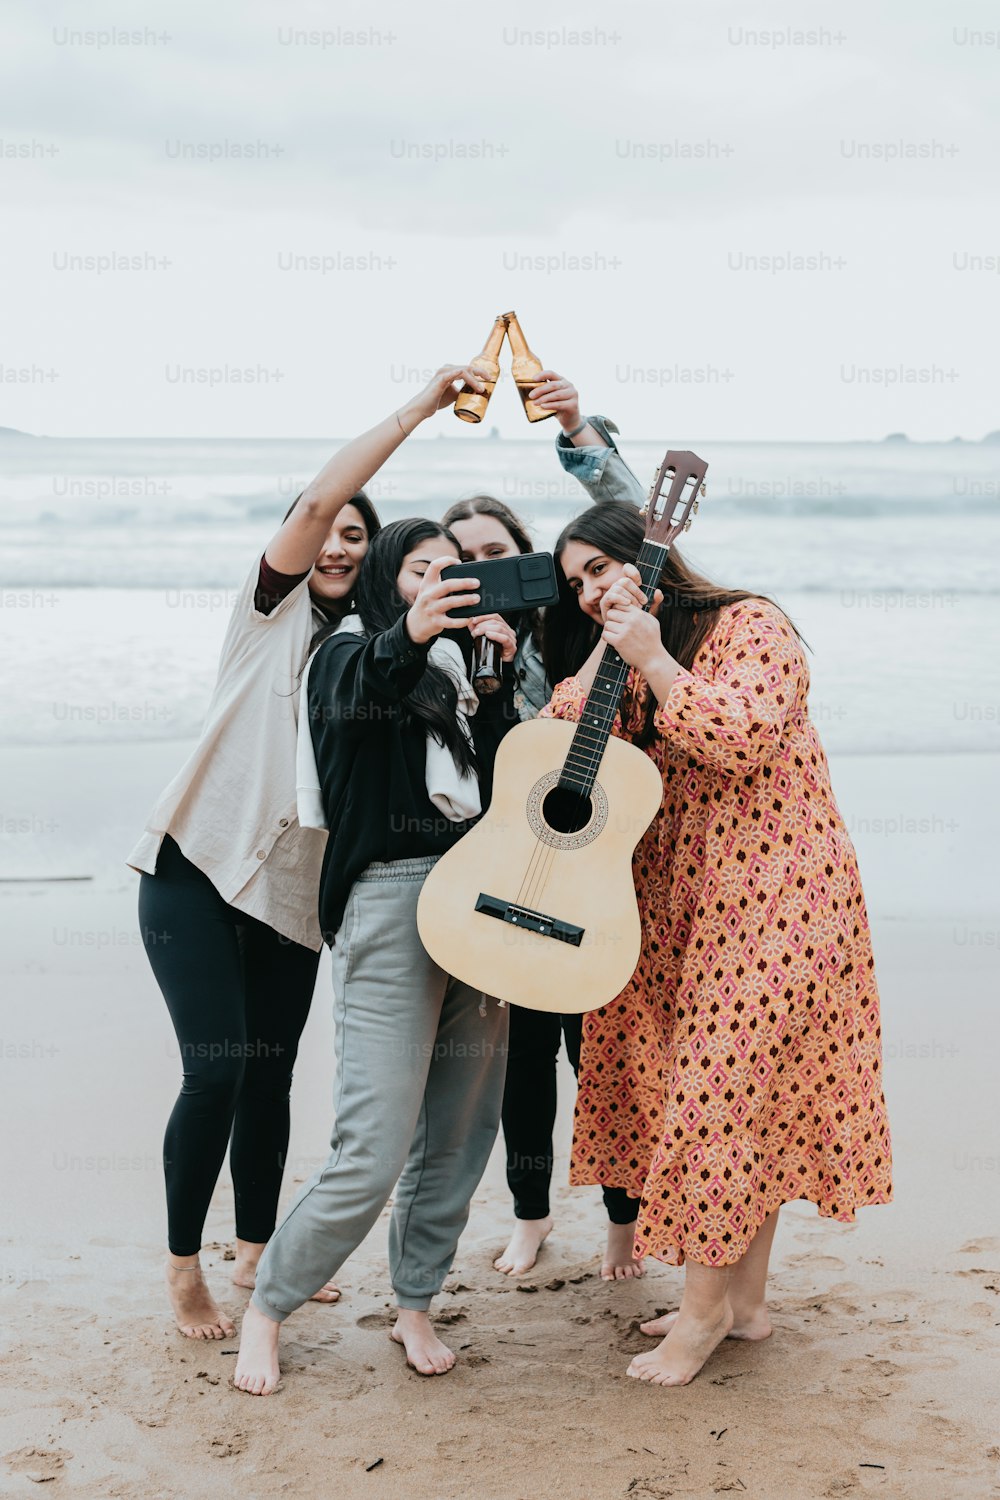 Eine Gruppe von Frauen, die oben auf einem Strand stehen